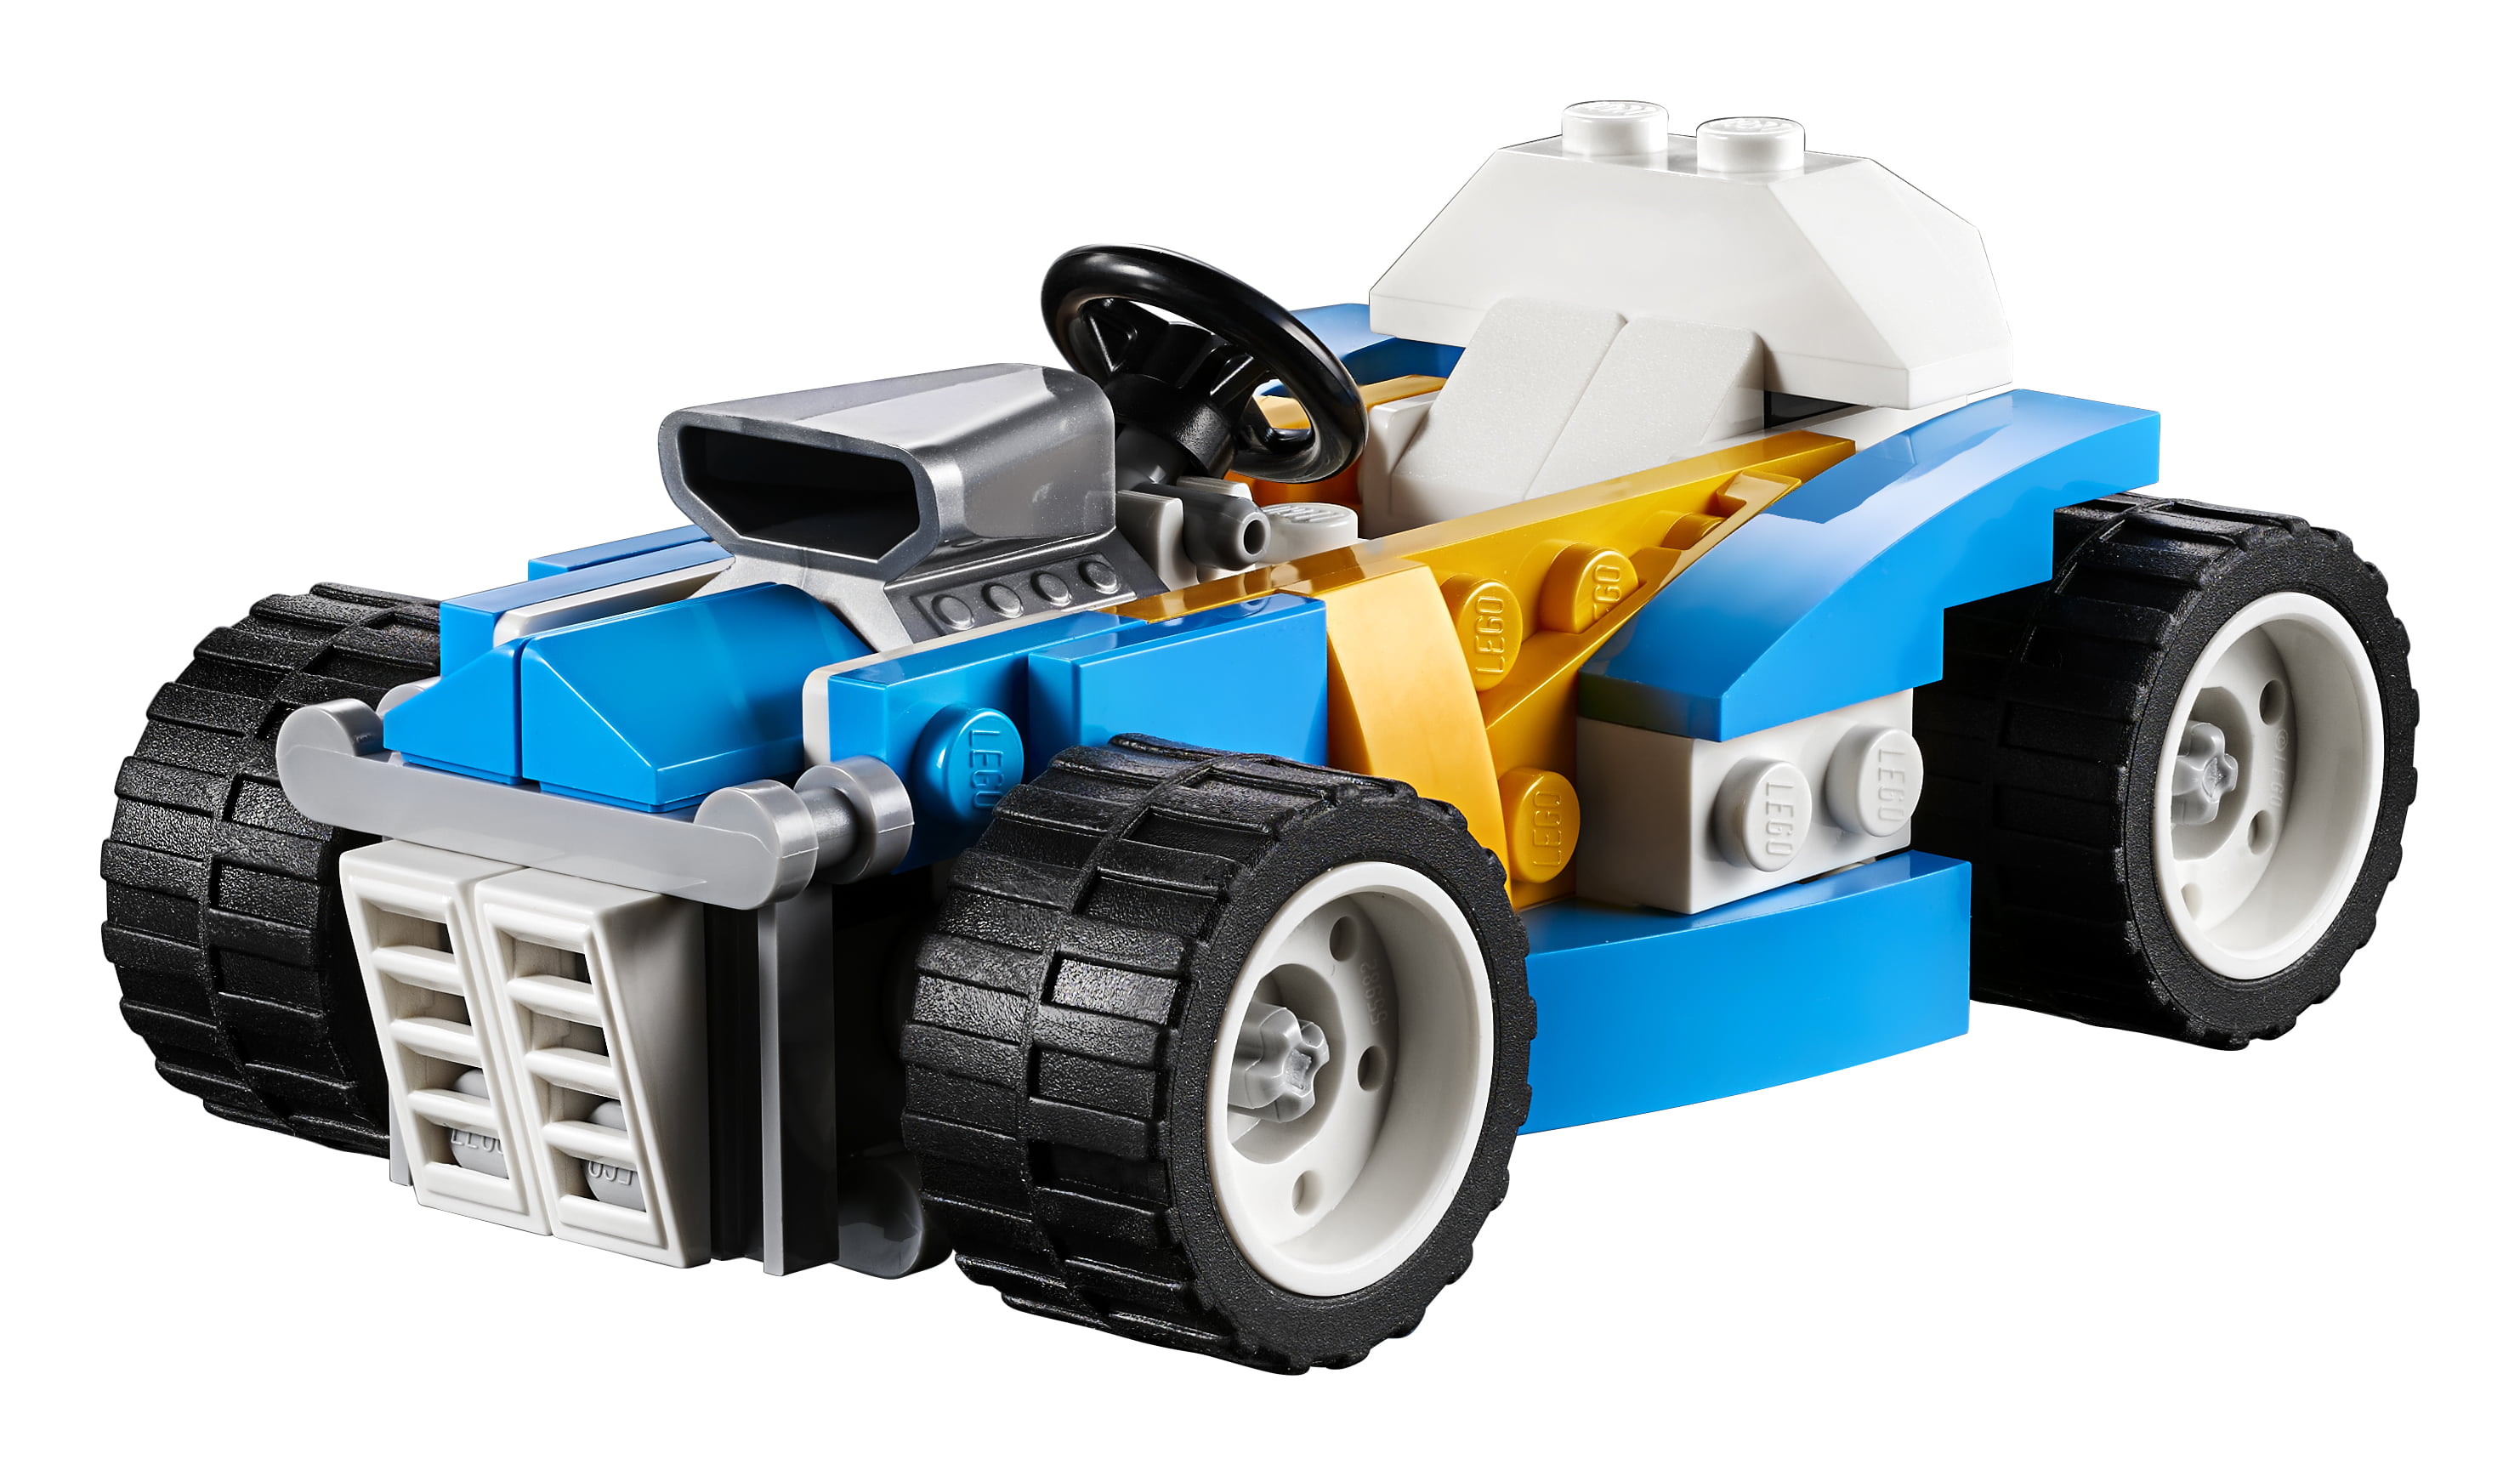 31072 Creator Extreme Engines Construction Toy LEGO UK 